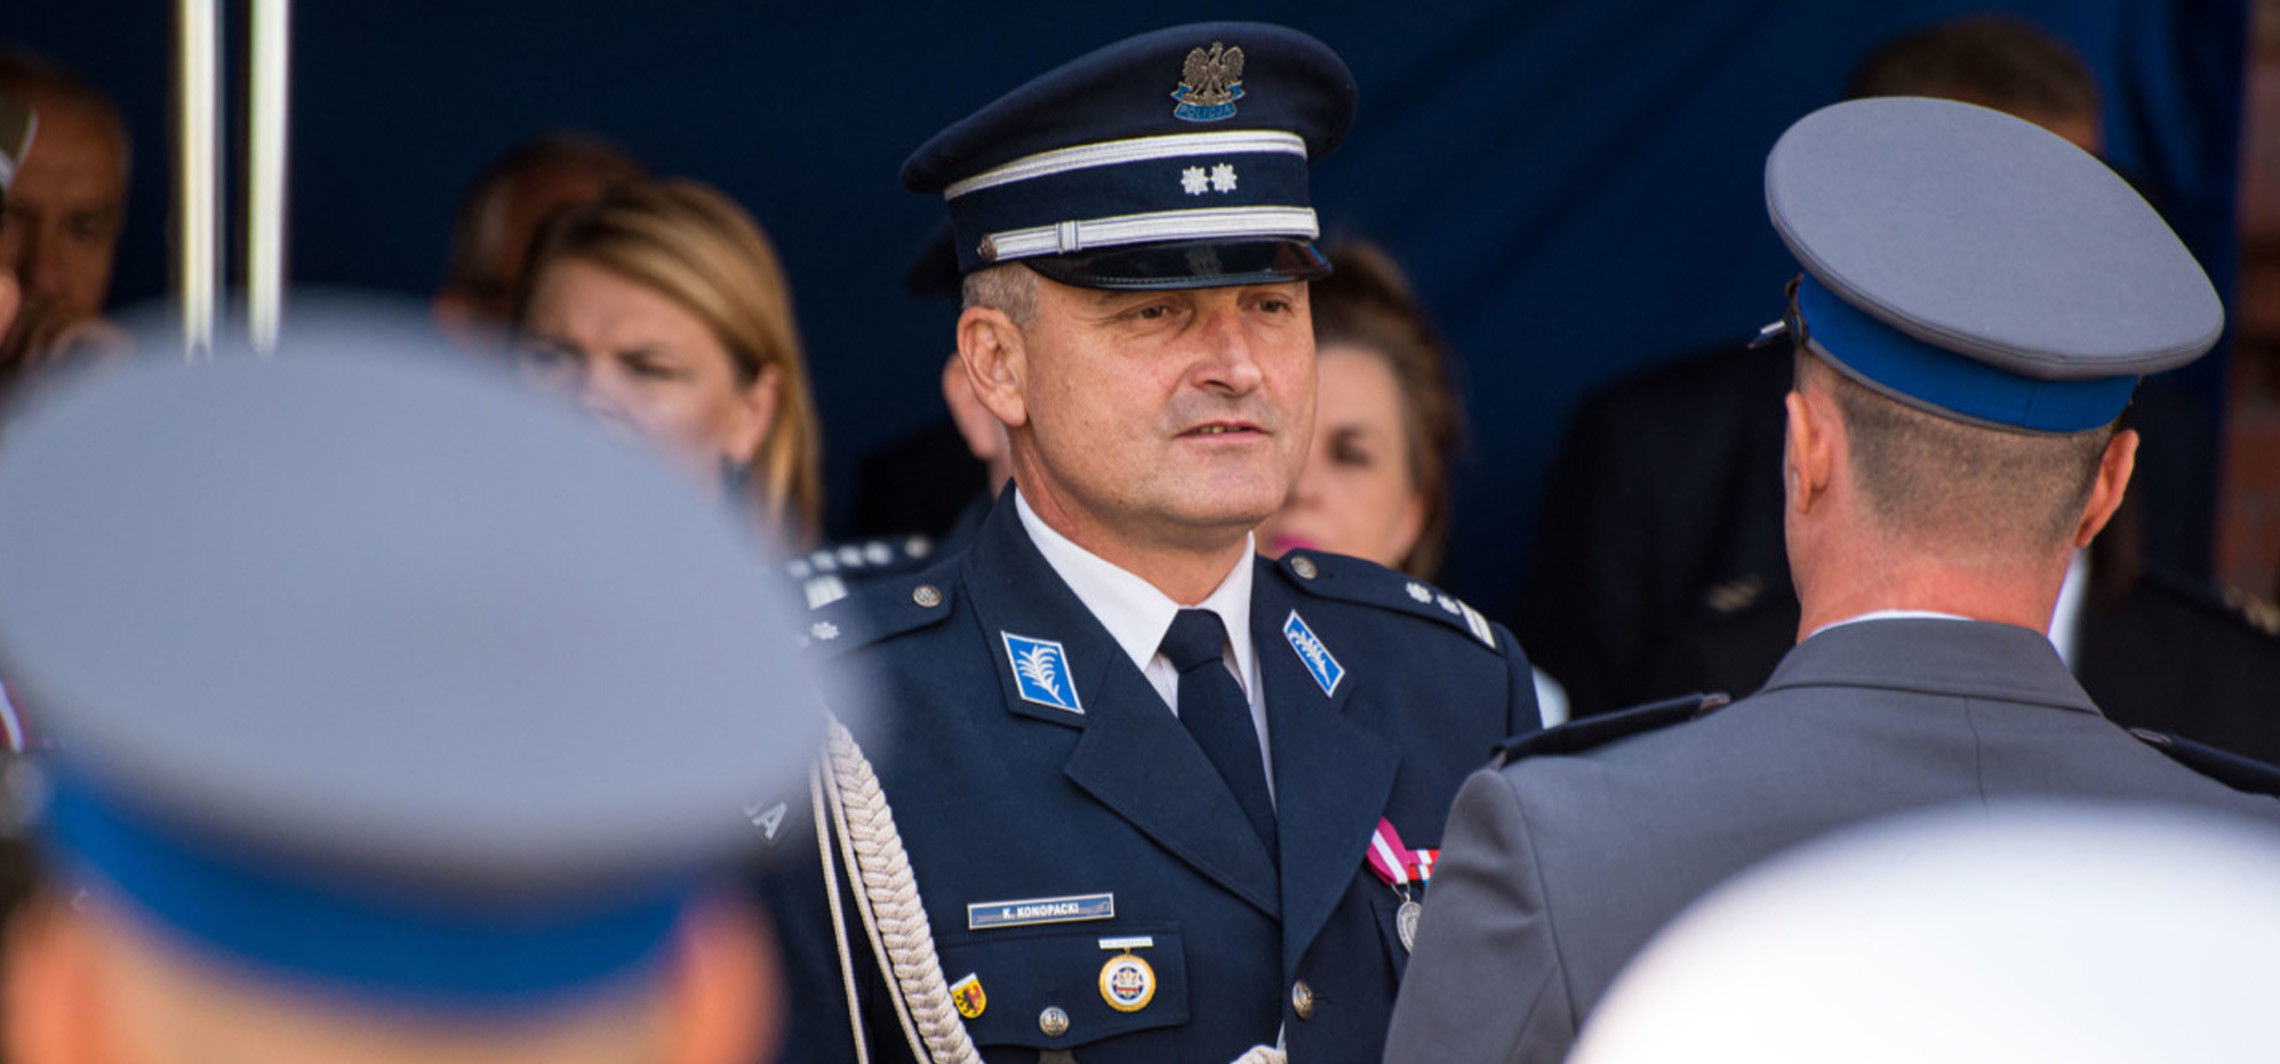 Inowrocław - Komendant inowrocławskiej policji przechodzi na emeryturę. Jest następca